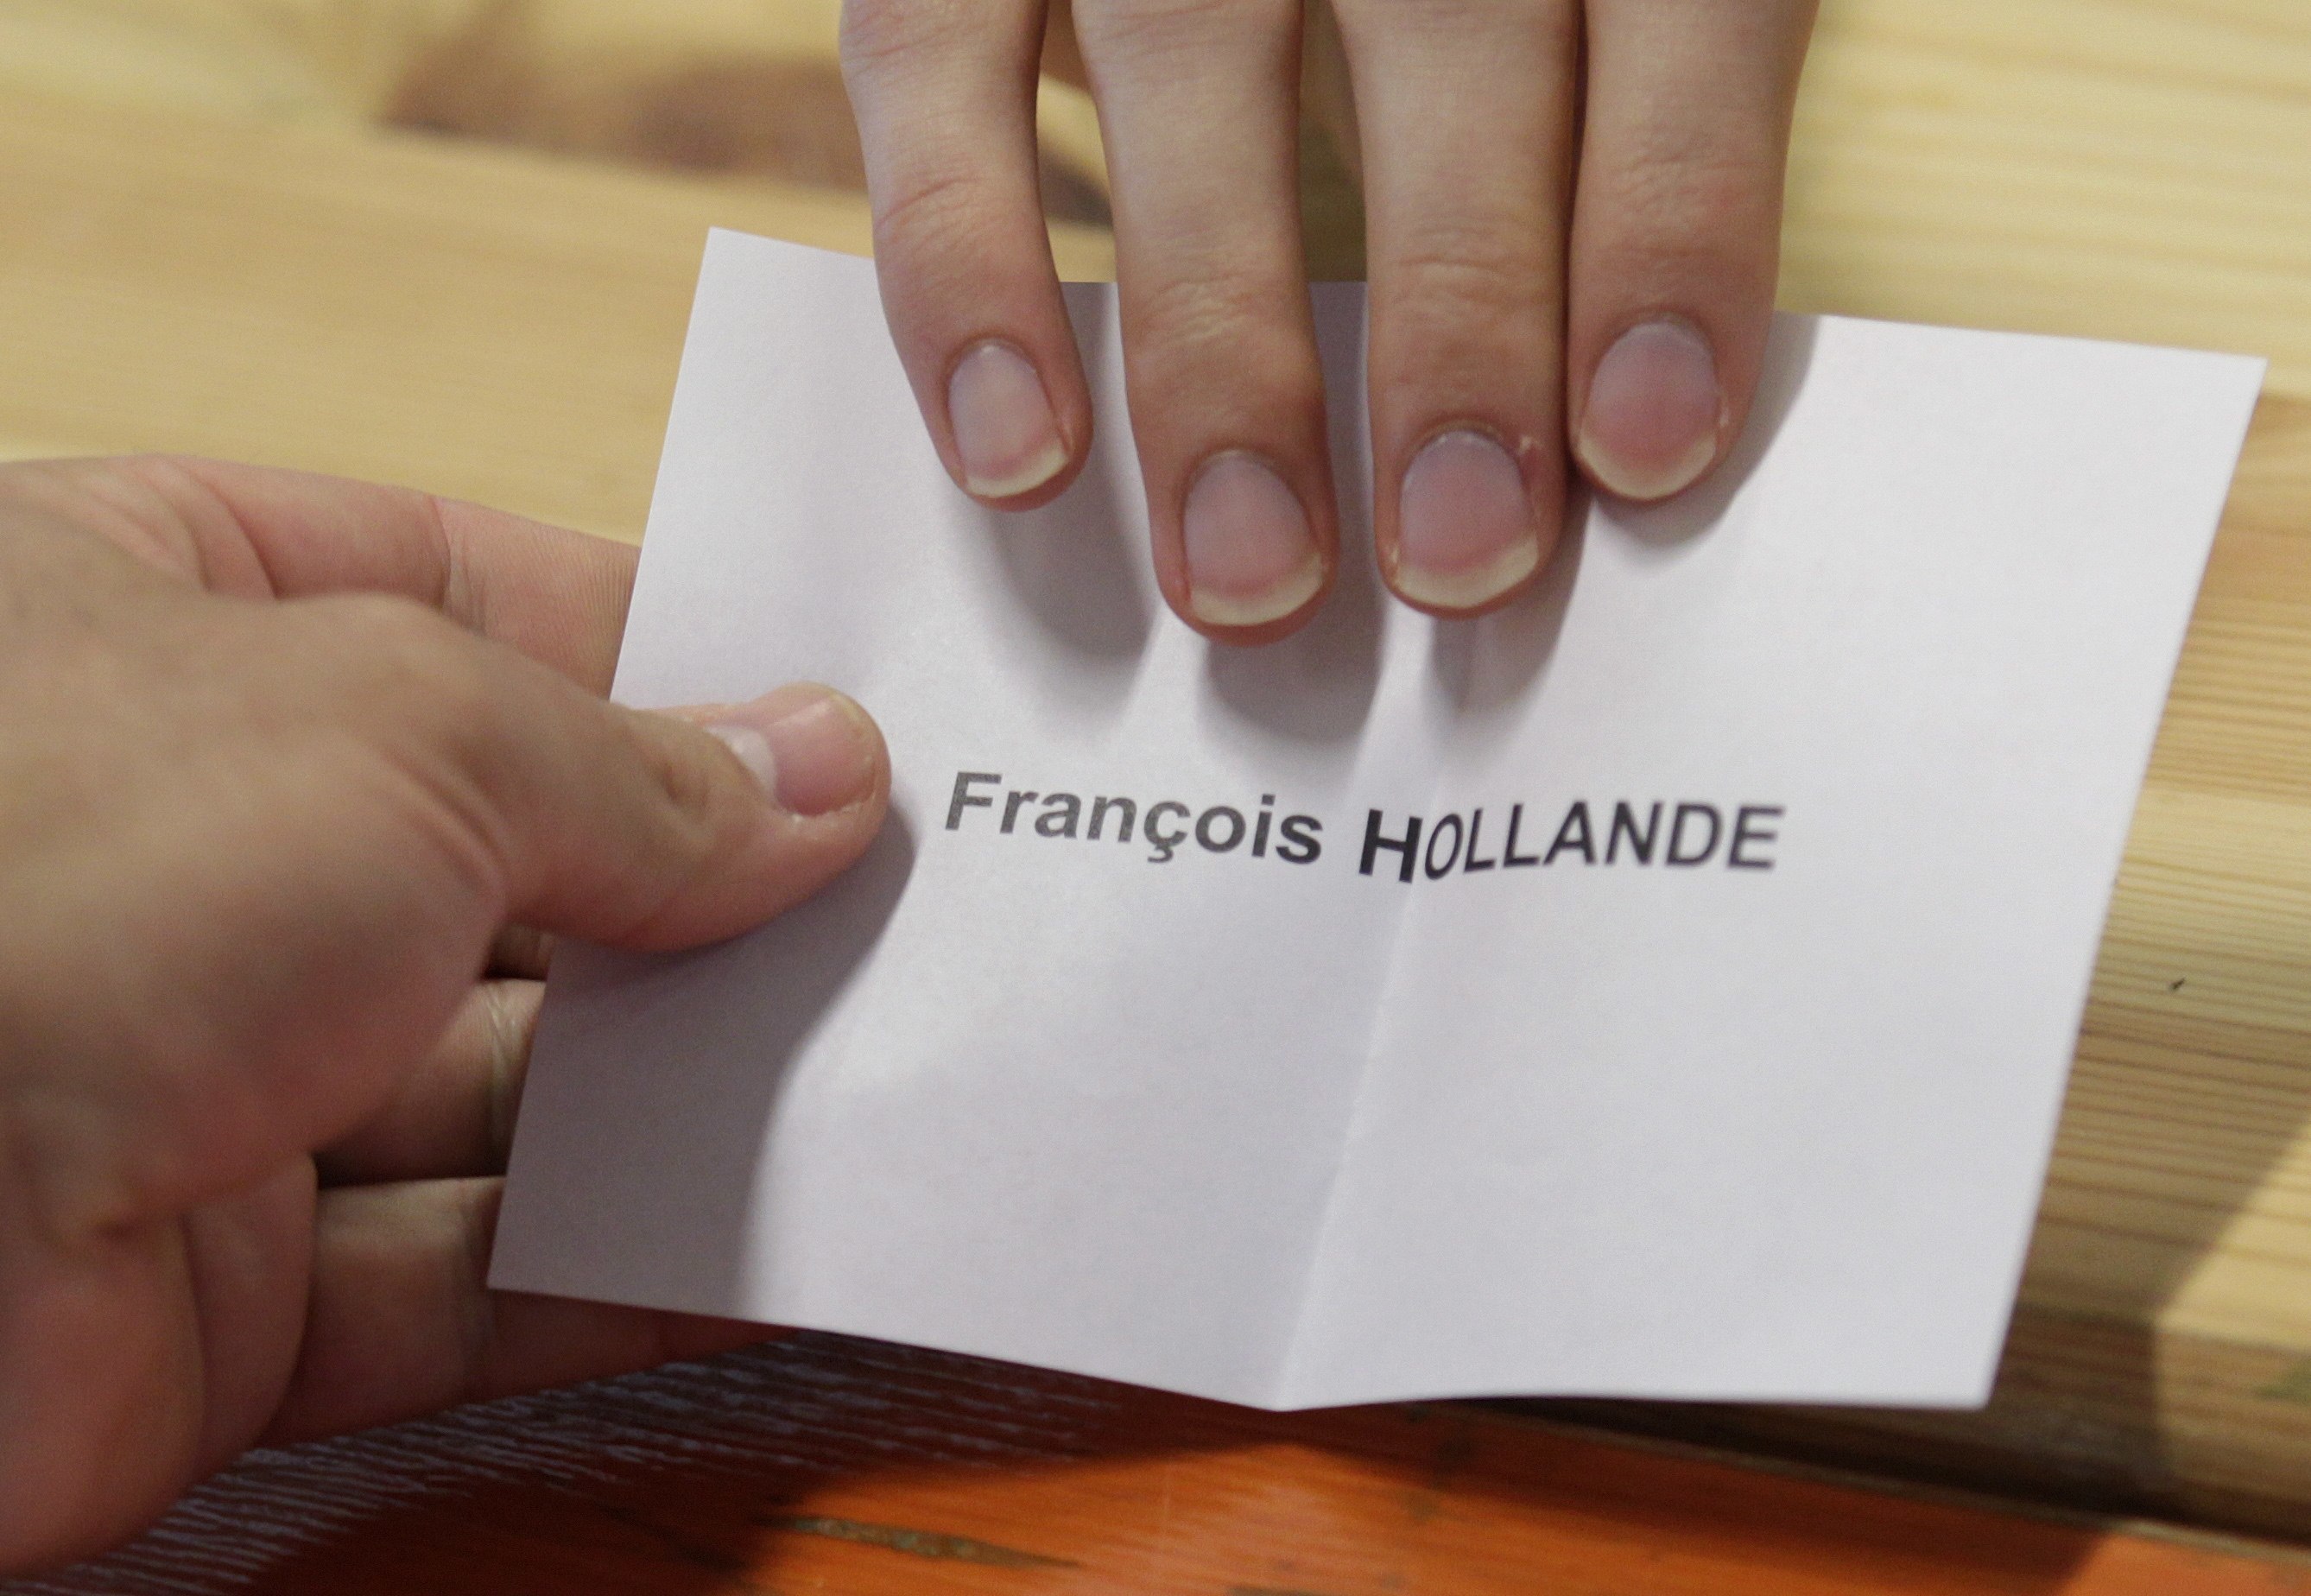 Τα exit poll δείχνουν ότι ο Ολάντ είναι ο νεος Πρόεδρος της Γαλλίας